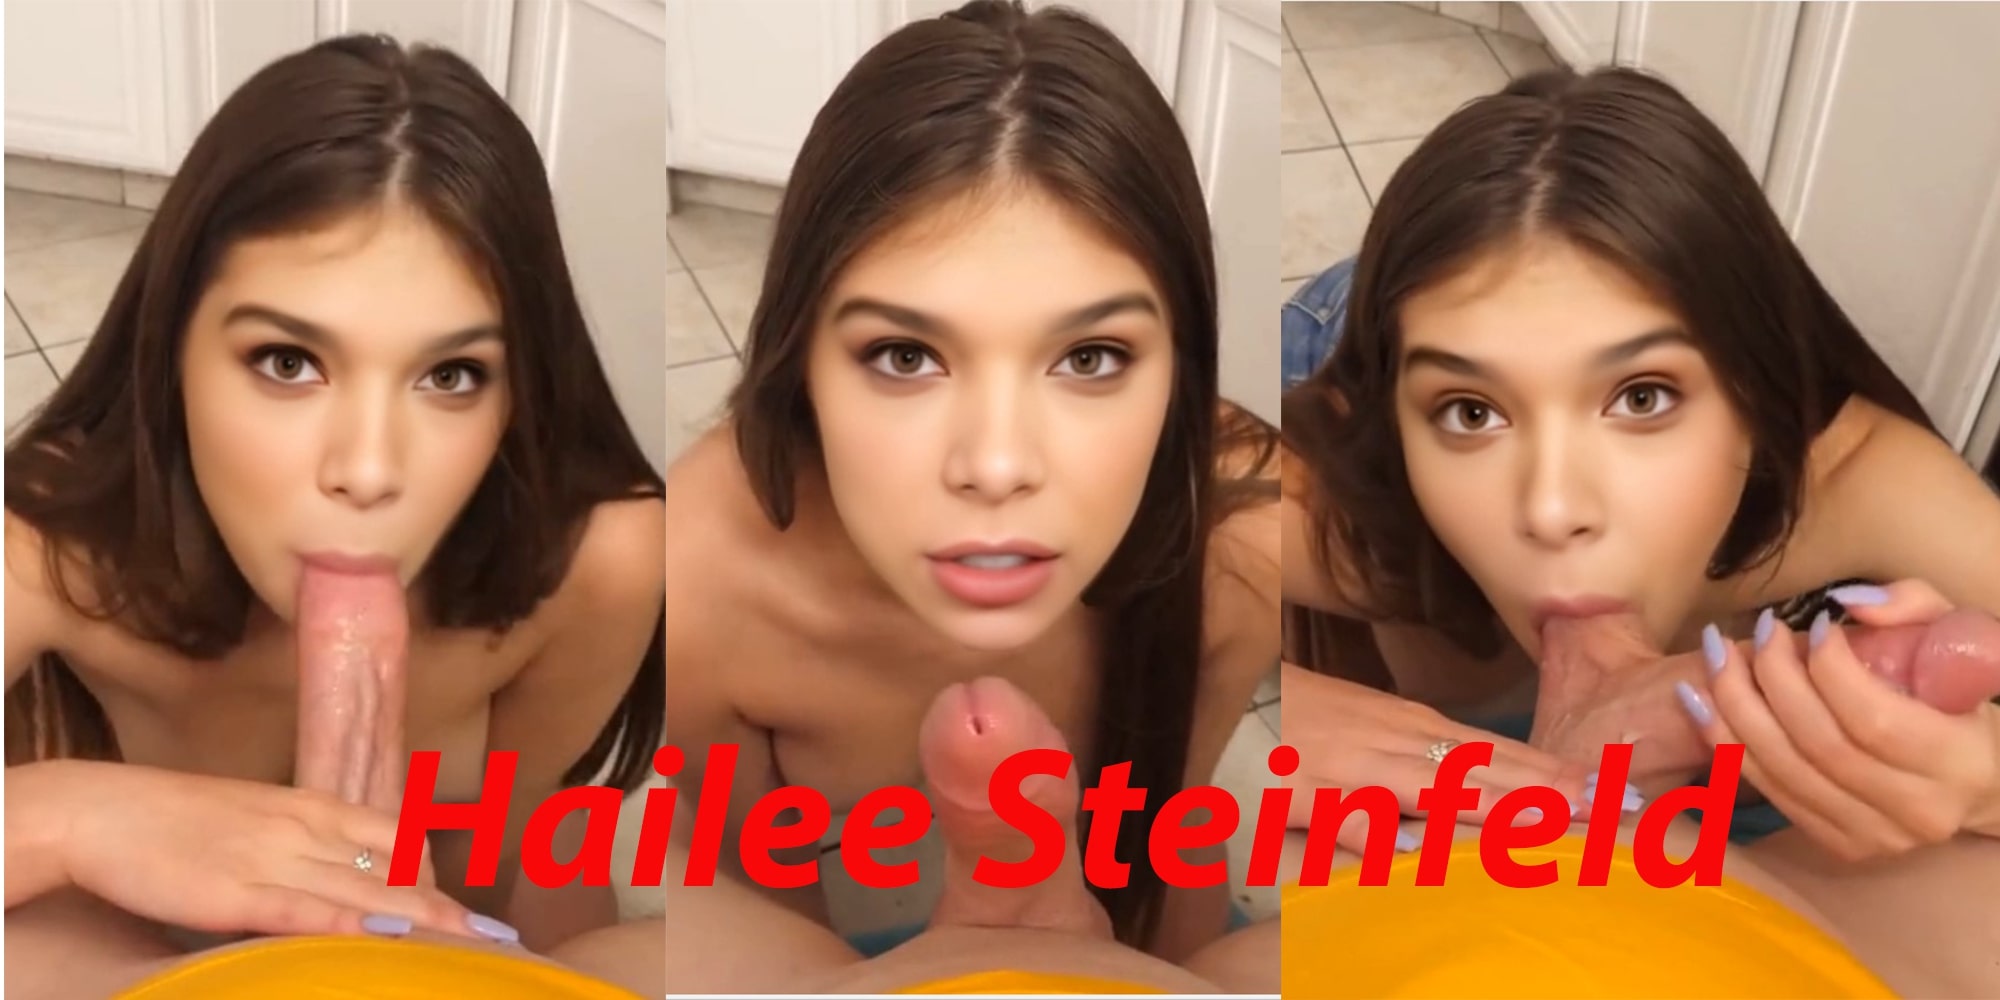 Hailee Steinfeld stepsis blowjob (full version)